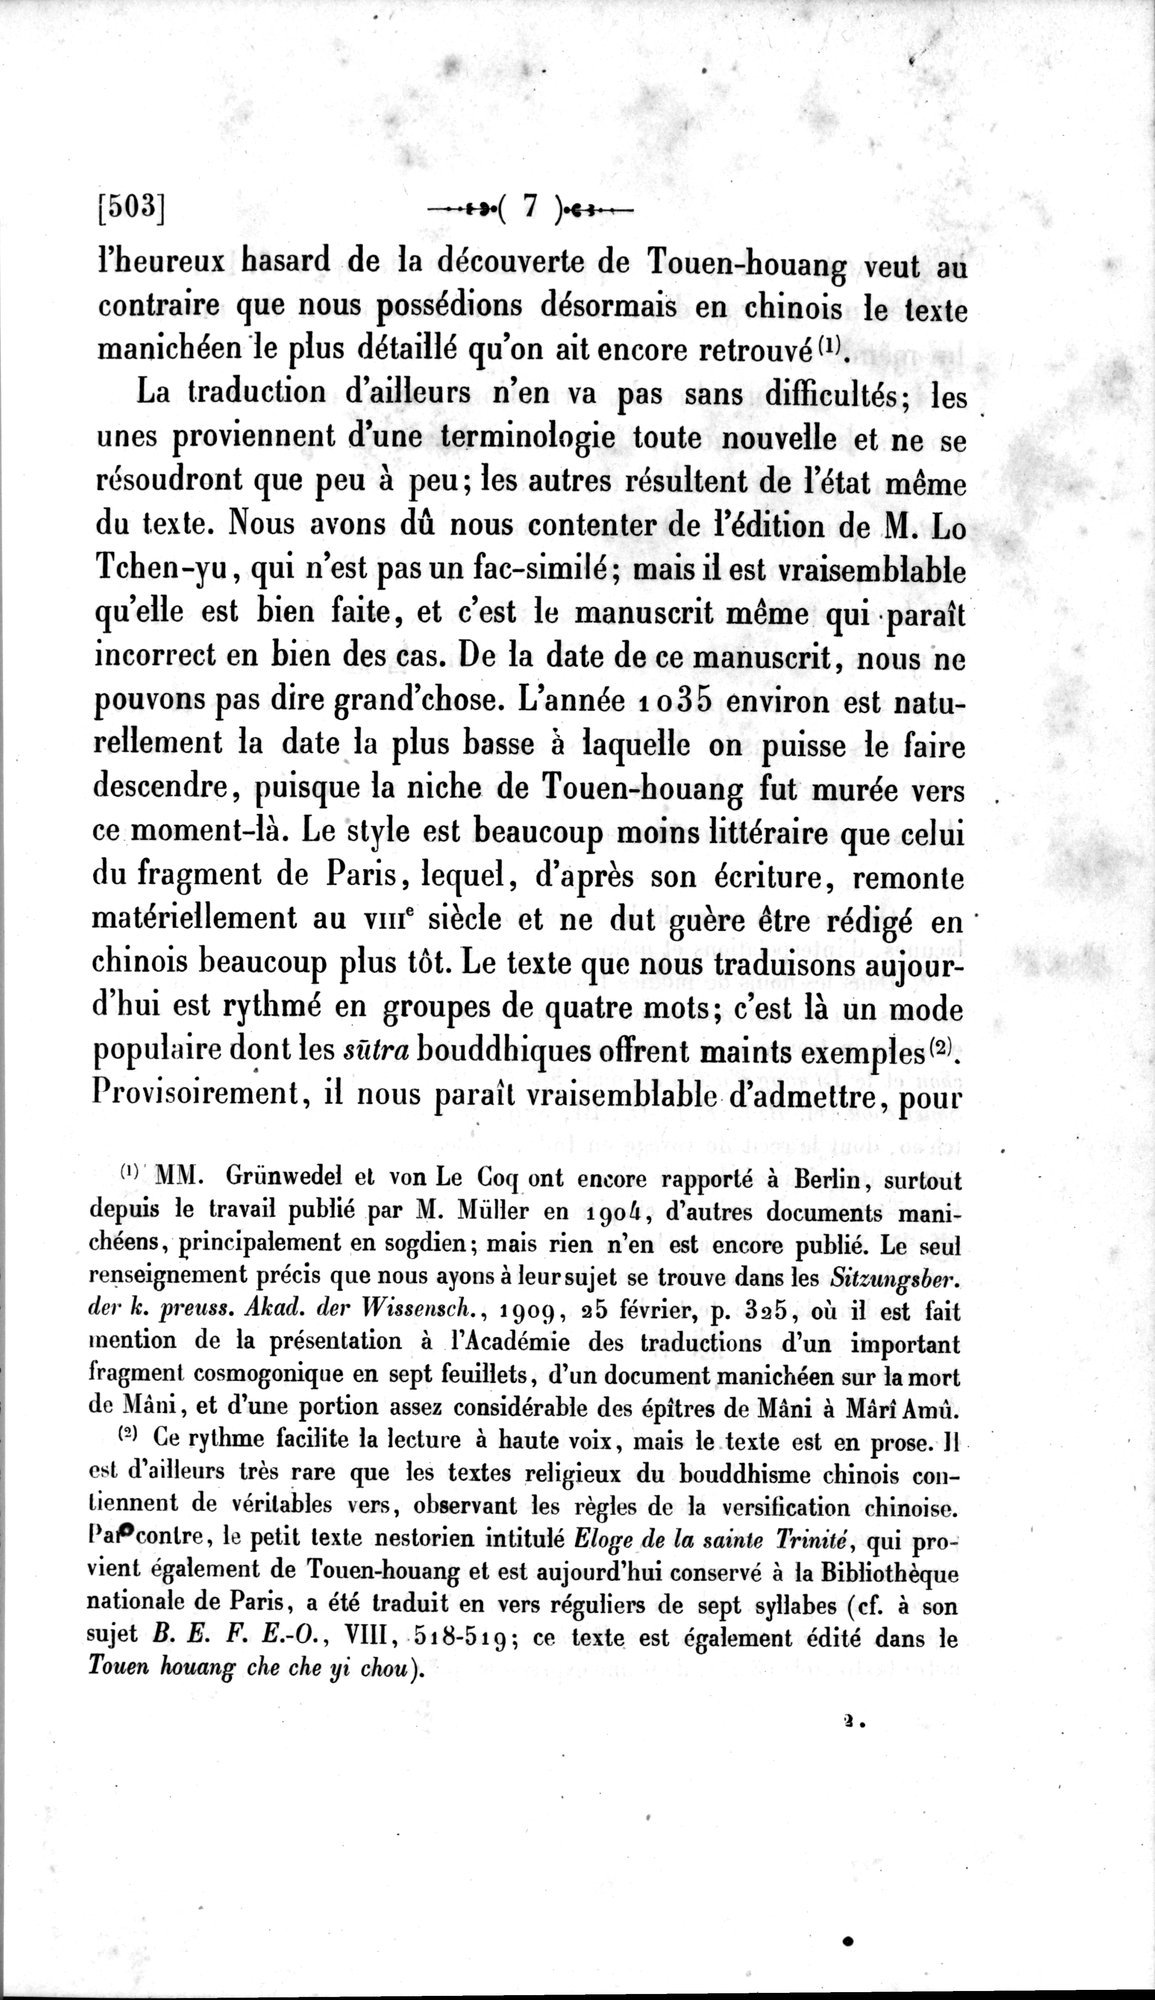 Un traité manichéen retrouvé en Chine : vol.1 / Page 17 (Grayscale High Resolution Image)